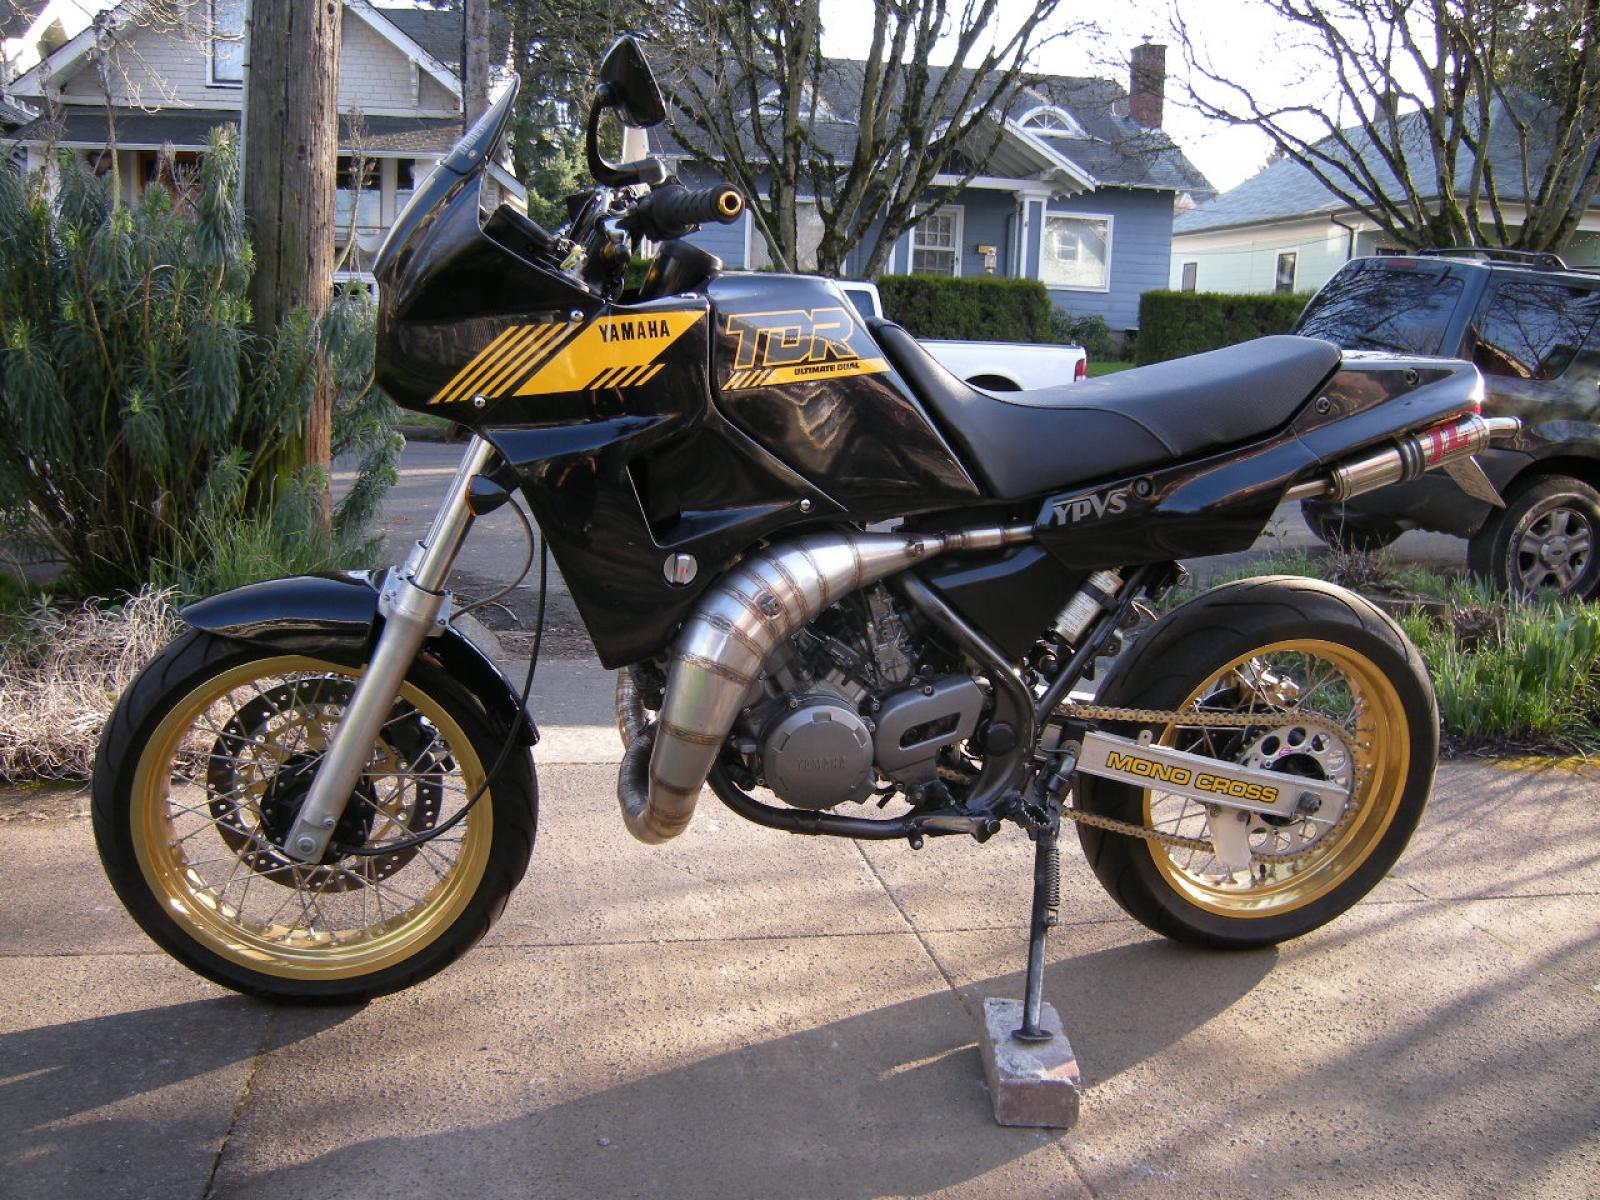 nouveau Yamaha tdr 250 1988-1991 42T 520 arrière alliage or anodisé sprocket